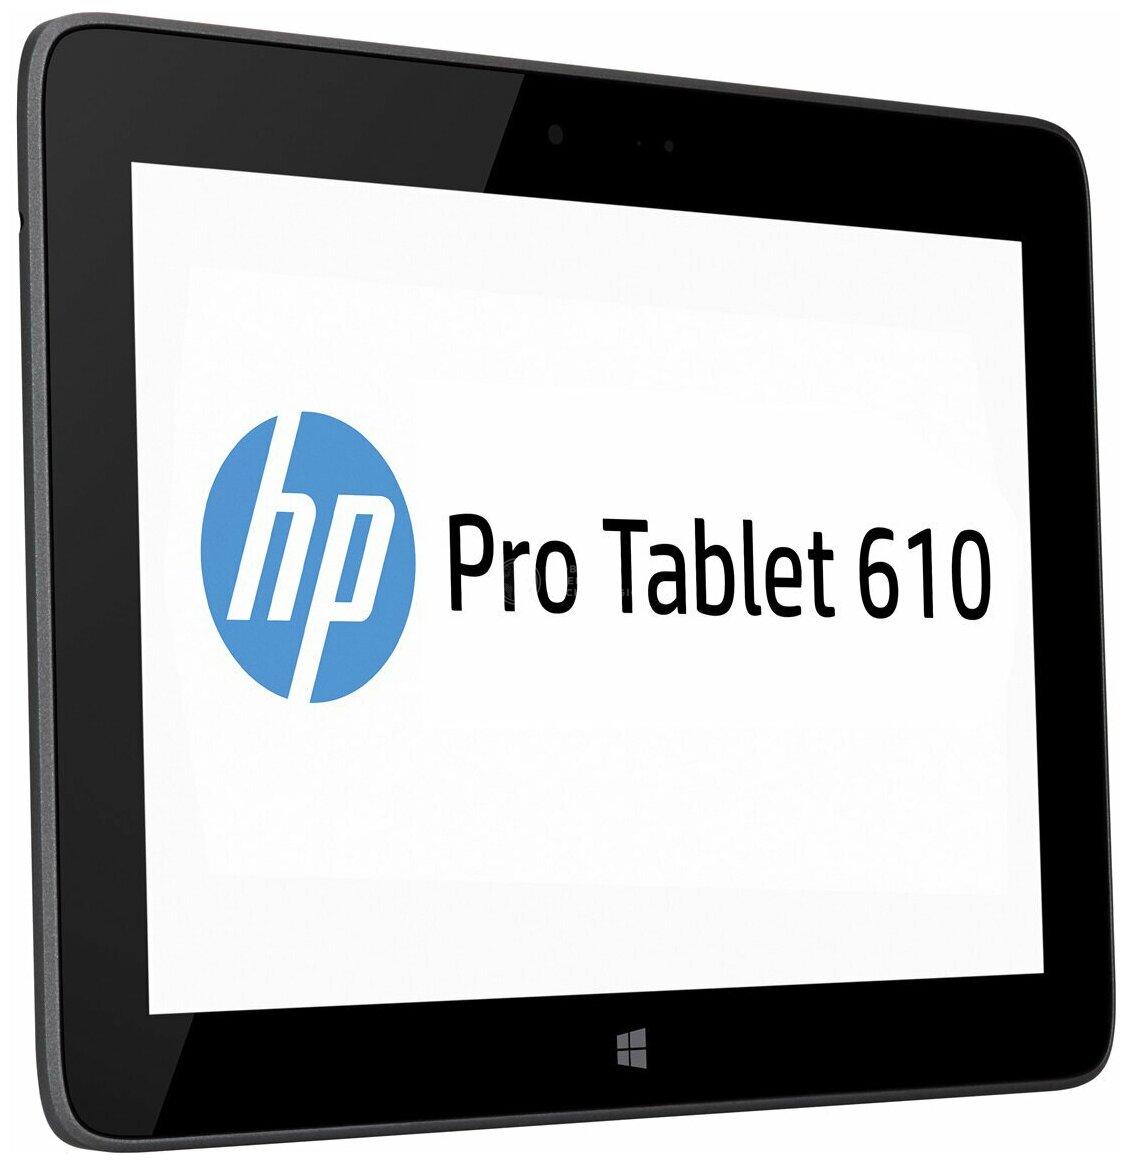 HP Pro Tablet 610 (G4T46UT)